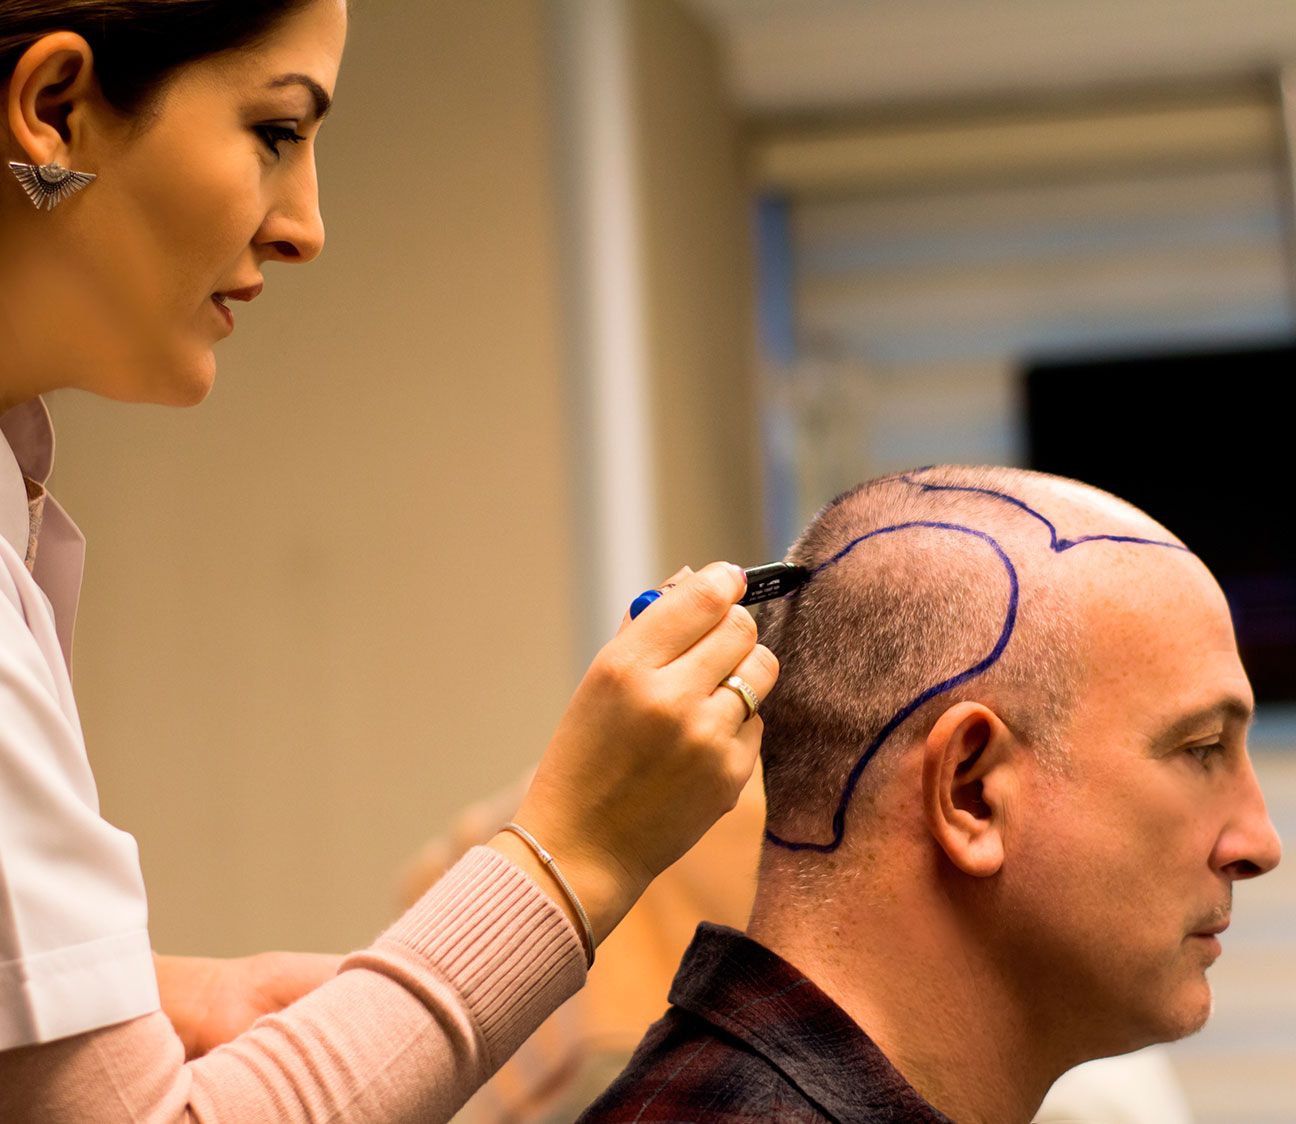 Центр пересадки волос. Татуаж на голове для мужчин. Трансплантация волос с затылка.